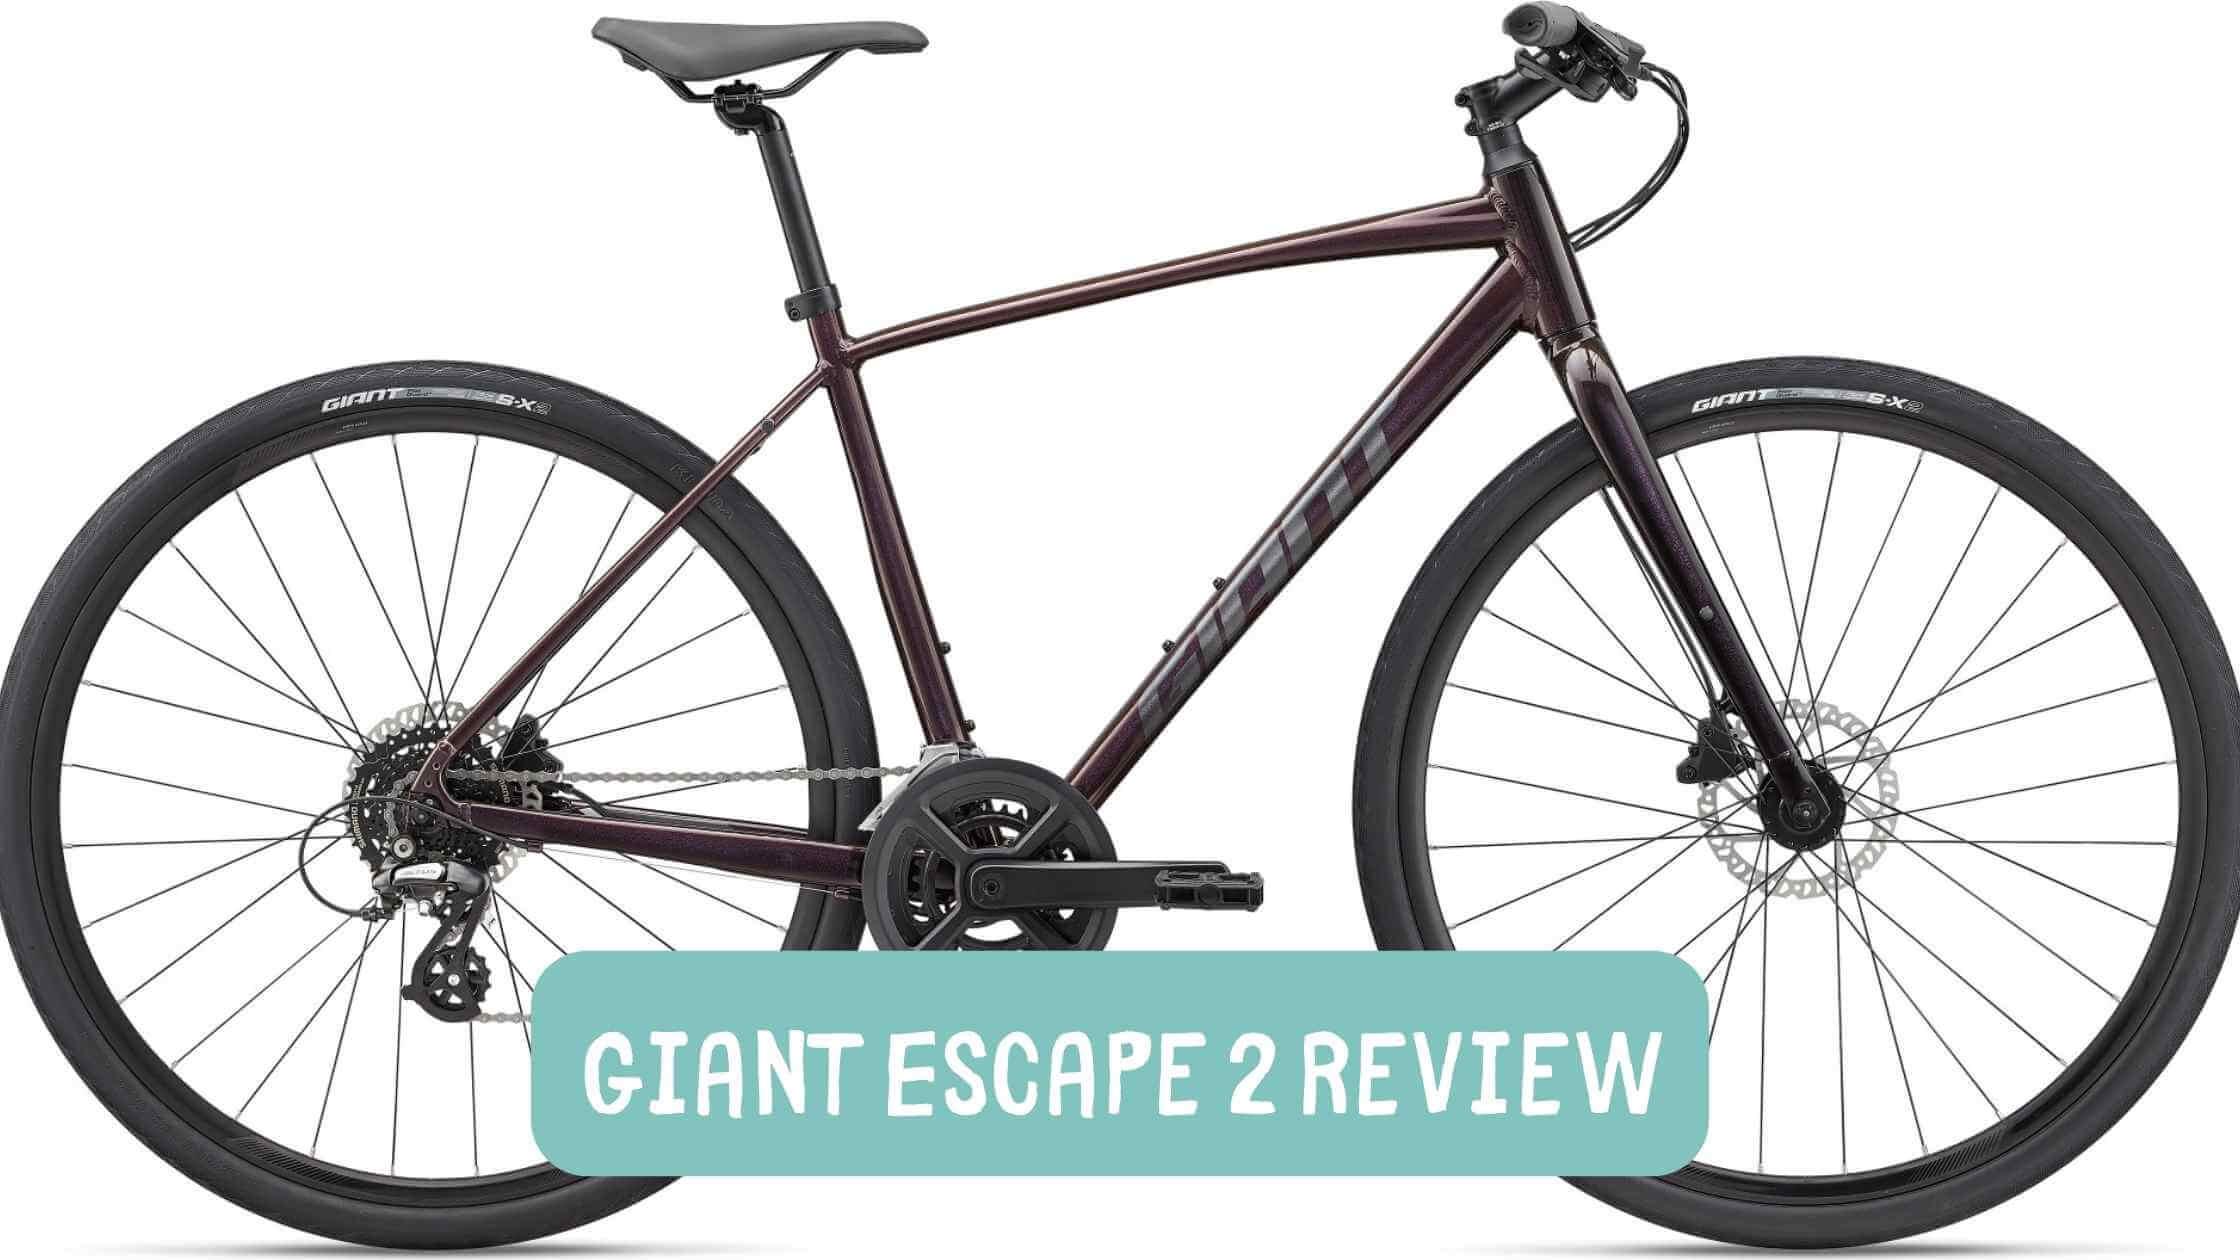 Giant Escape 2 Review